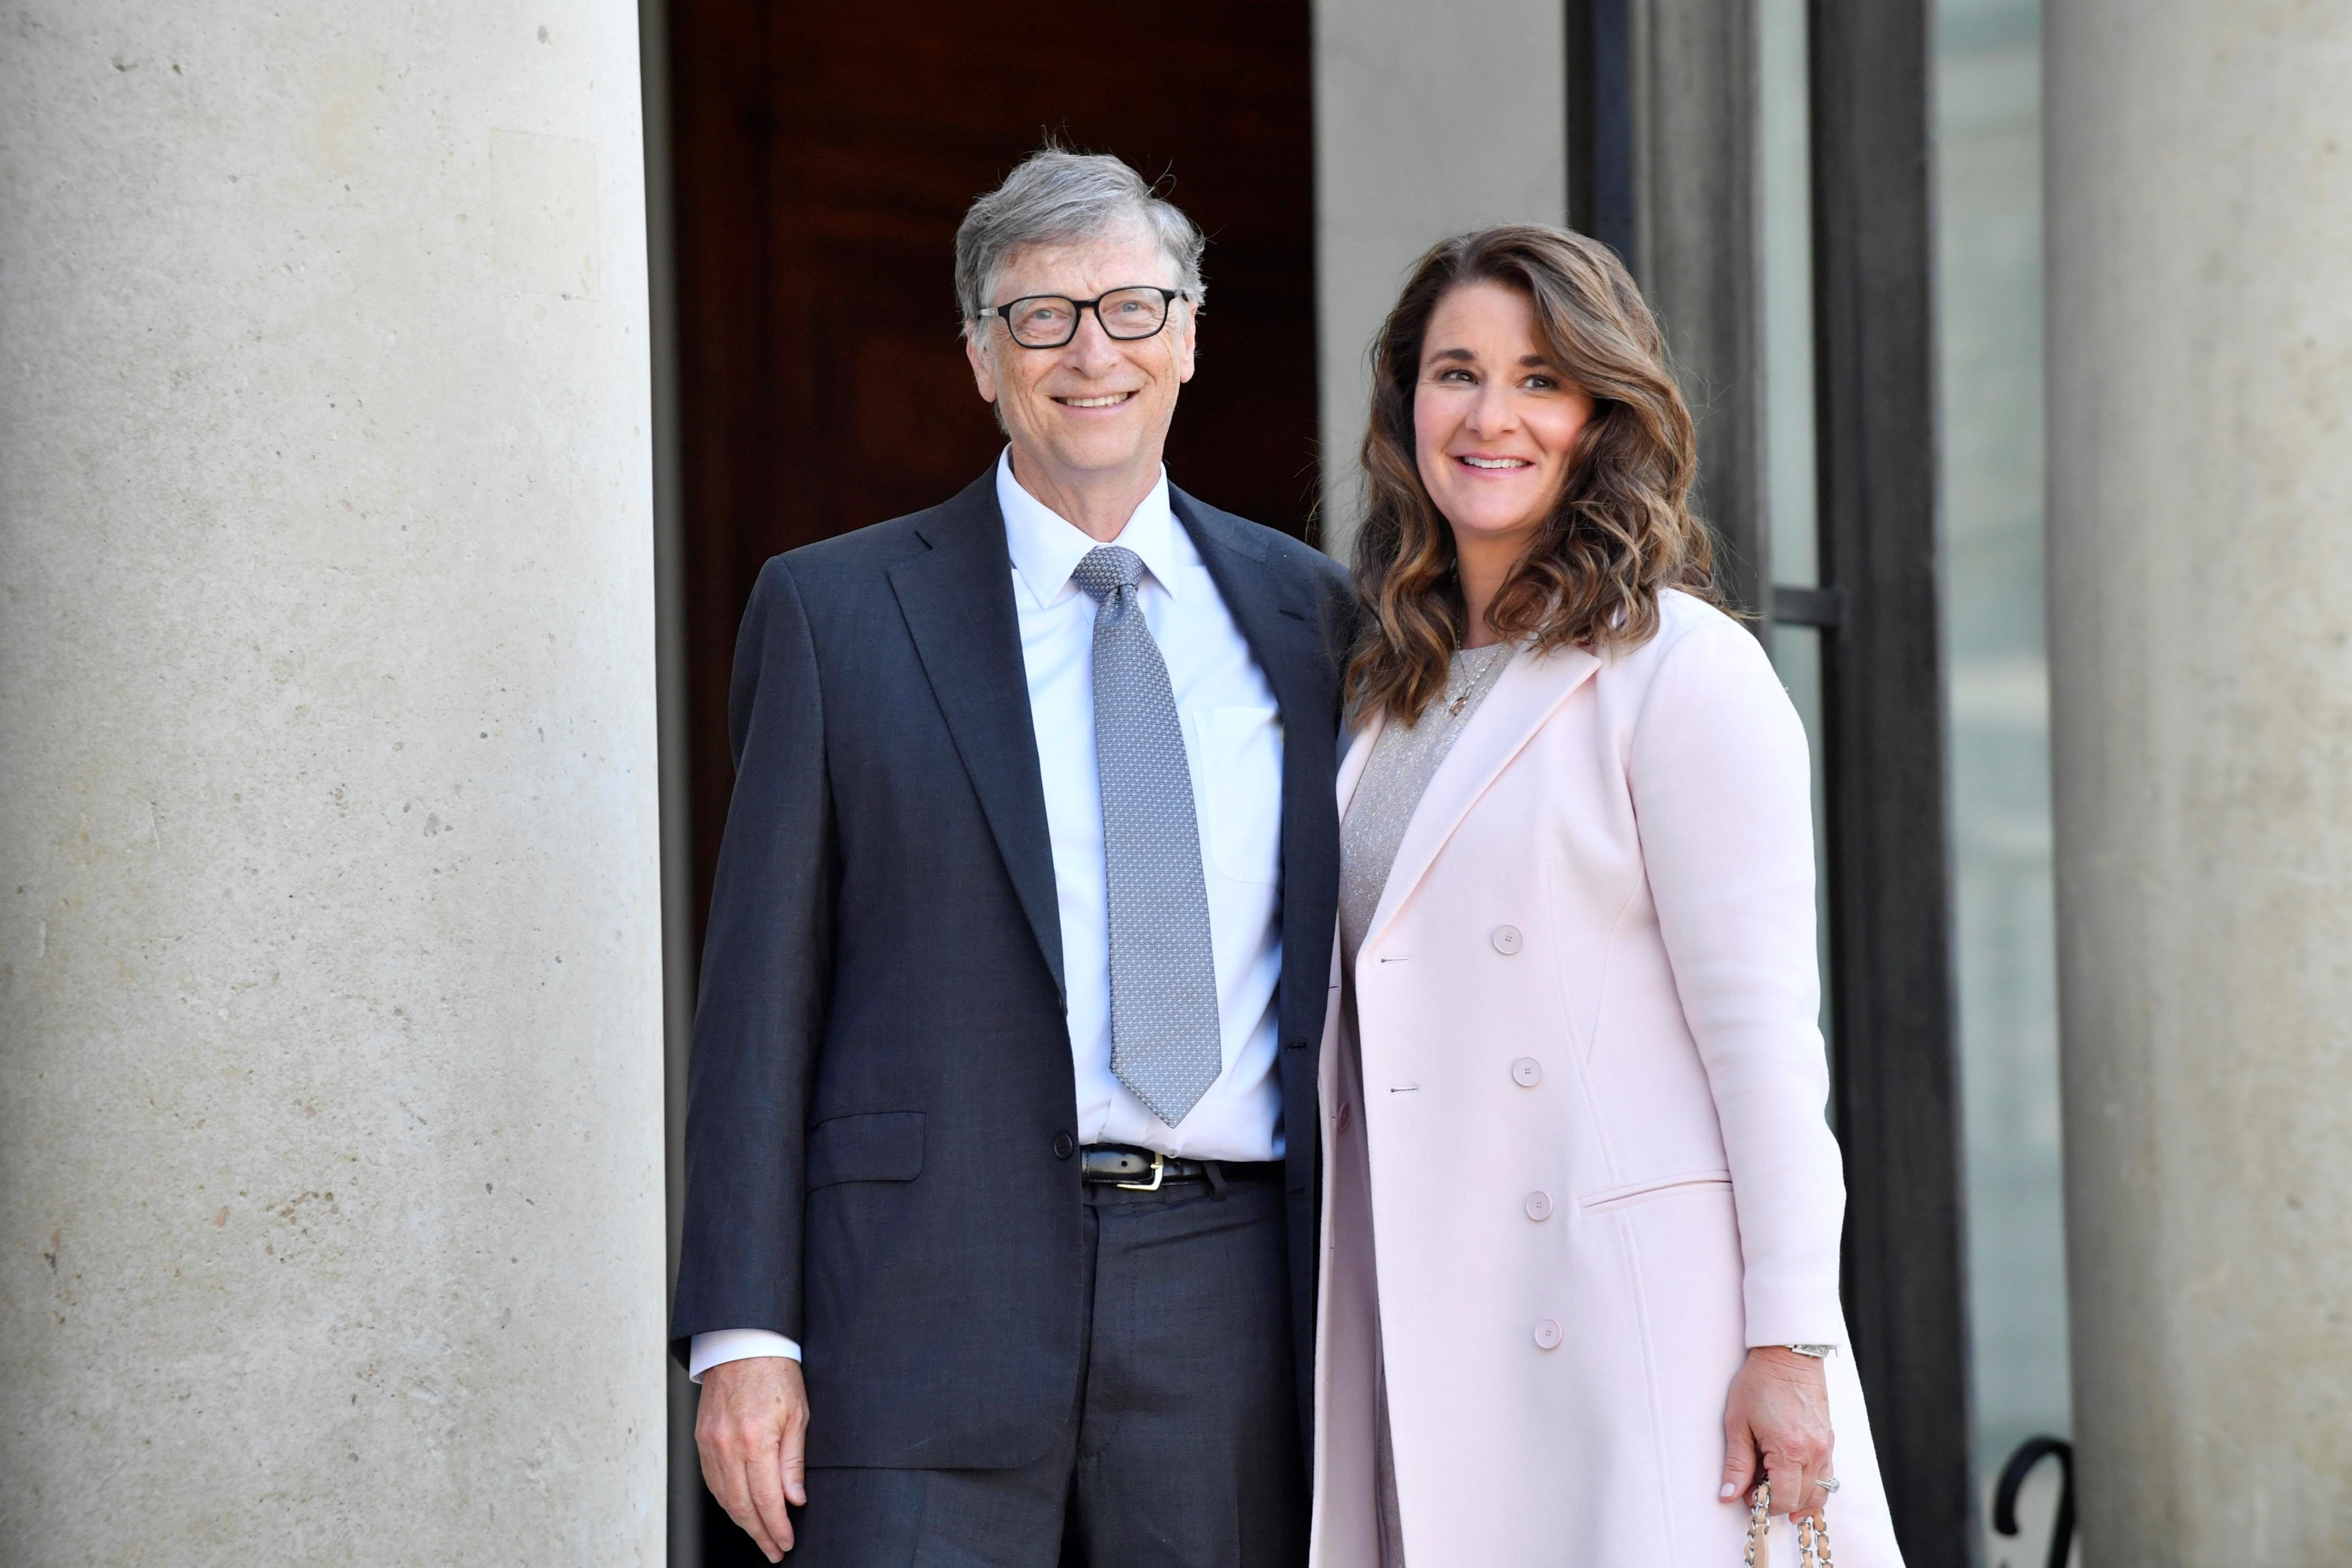 Fotografía tomada en abril de 2017 en la que puede verse al fundador de Microsoft, Bill Gates junto a su ex esposa, Melinda French, en París (EFE)
